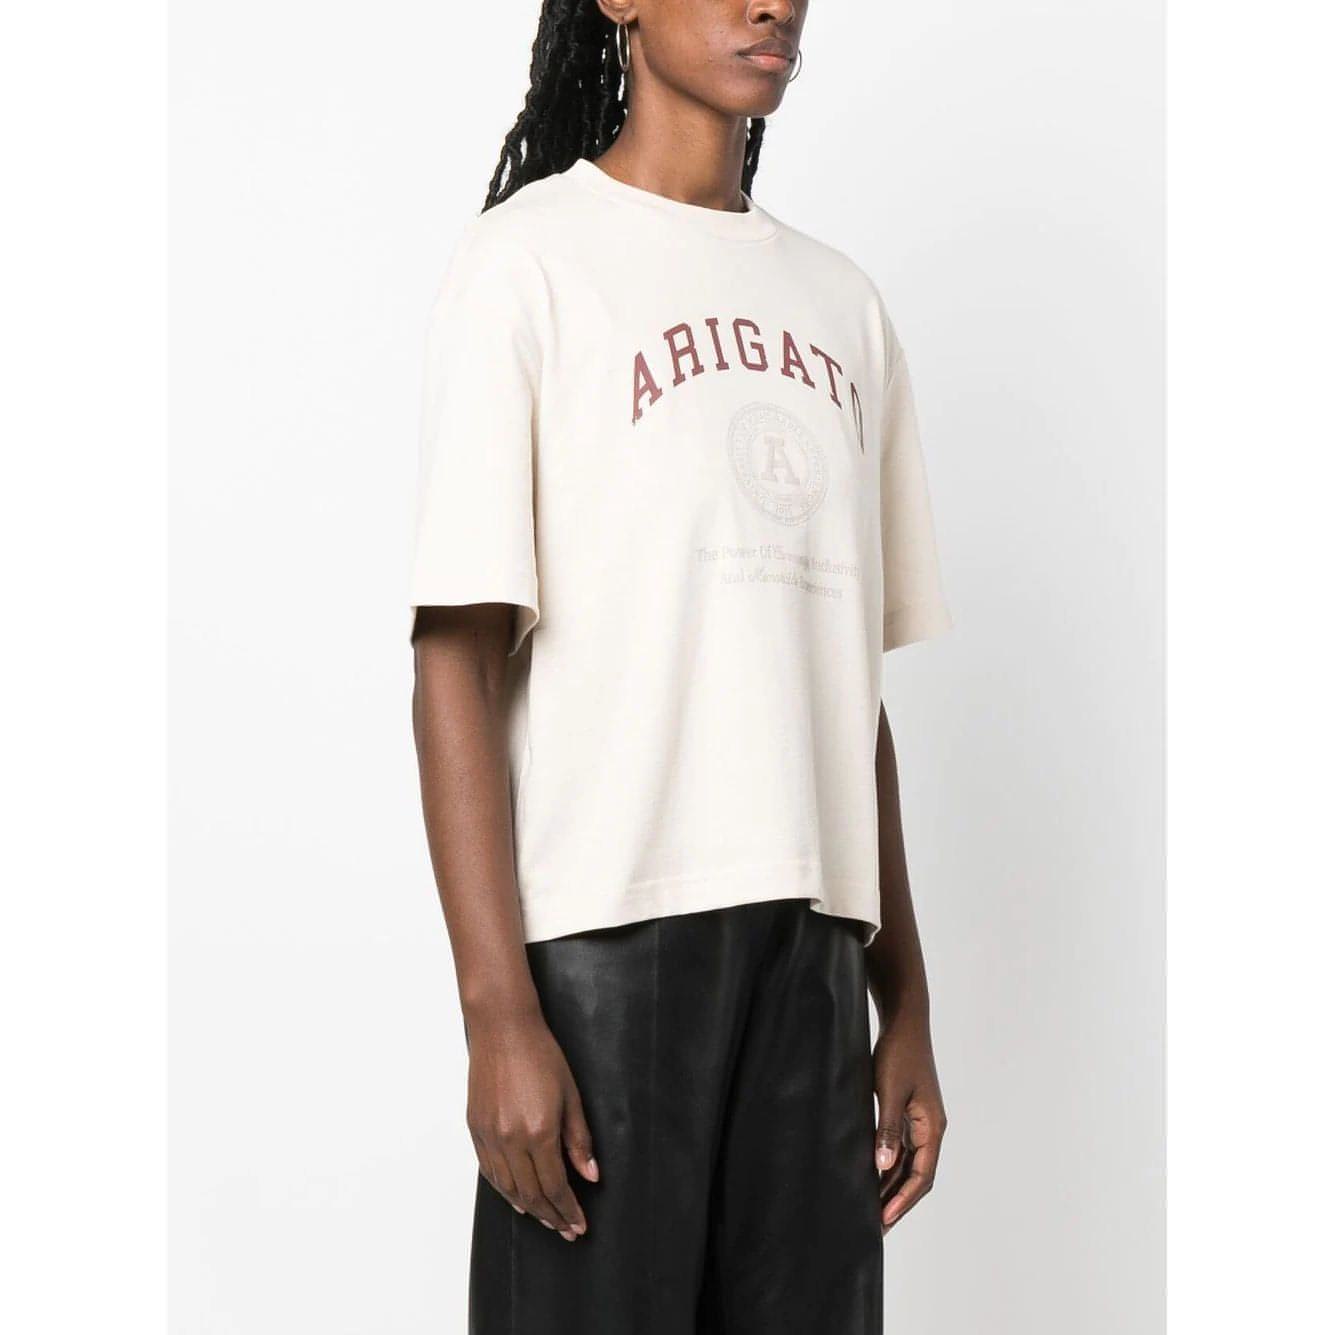 AXEL ARIGATO moteriški šviesūs marškinėliai Arigato University T-Shirt